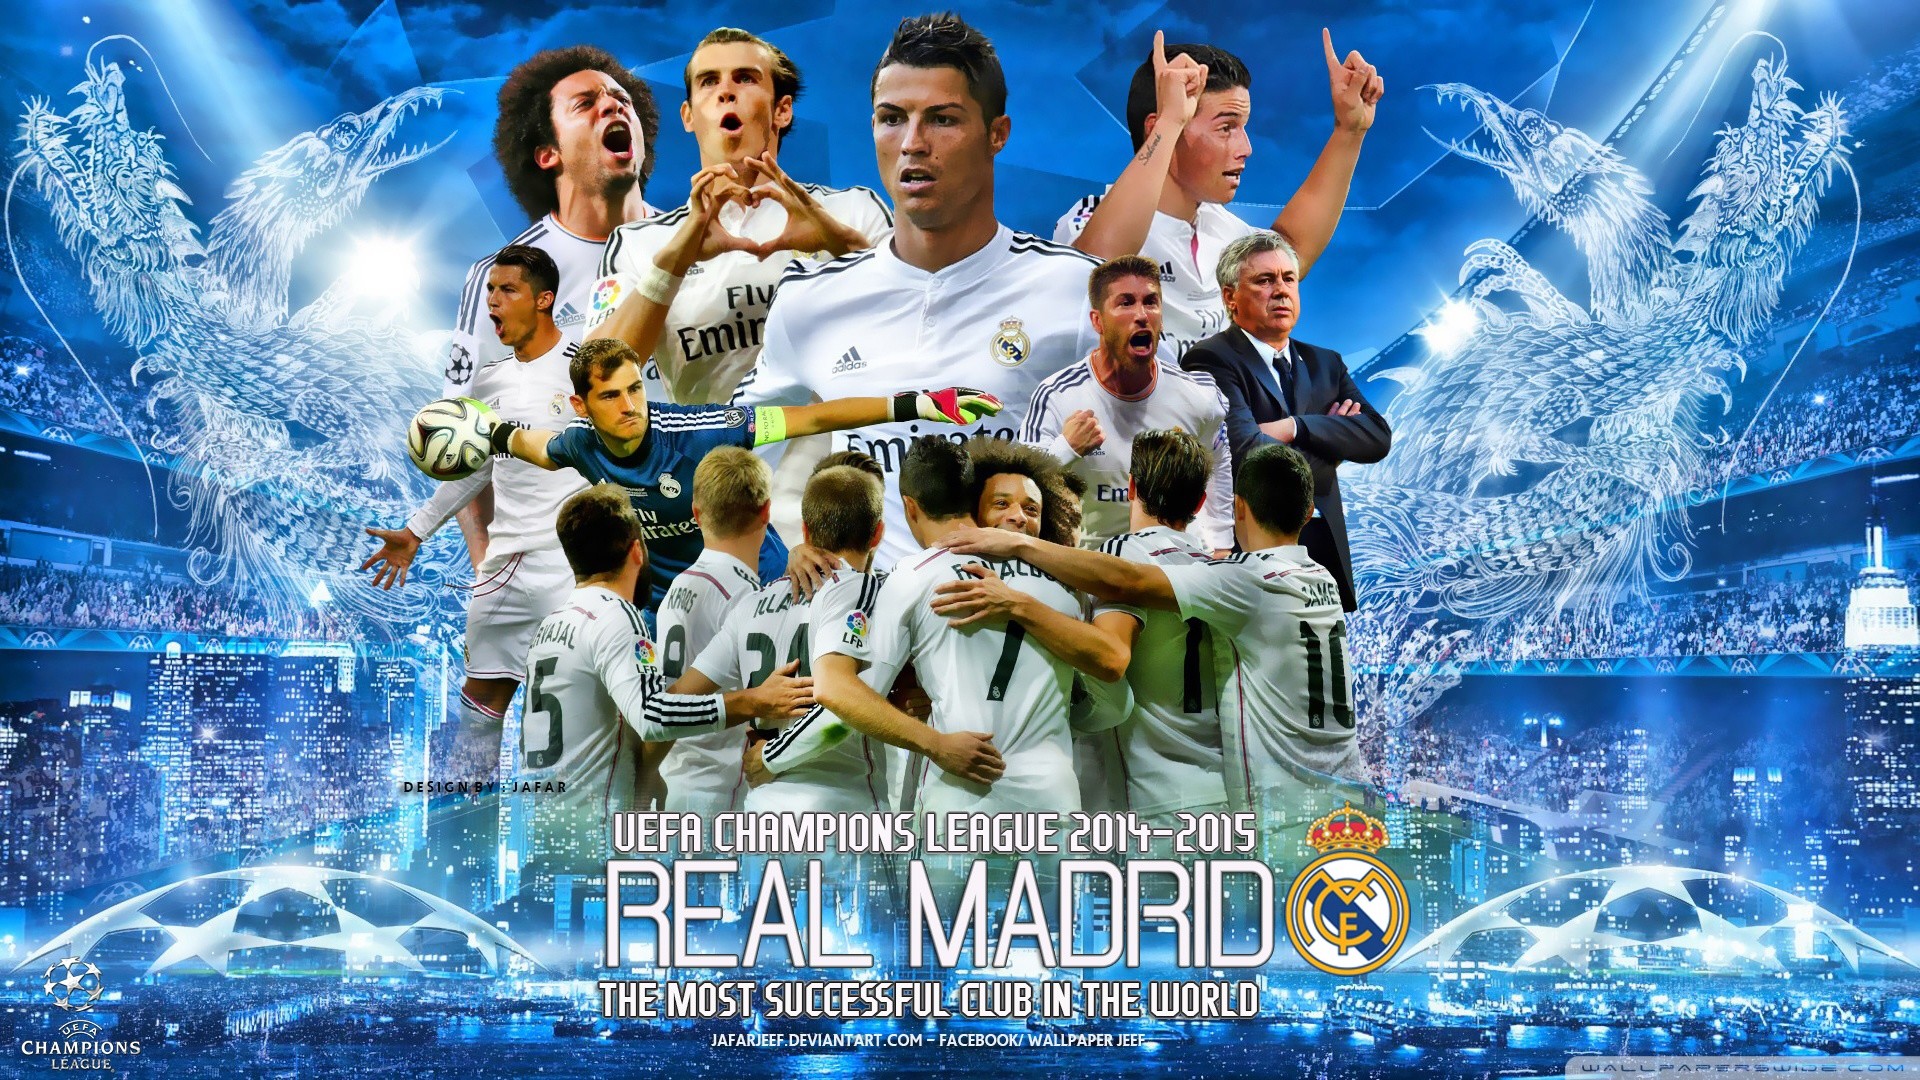 Nếu bạn là một fan của đội bóng Real Madrid và muốn sở hữu hình nền đẹp nhất về đội bóng của mình, thì hãy tìm kiếm hình nền đẹp Real Madrid Full HD. Với độ phân giải cao, chi tiết tuyệt vời và màu sắc sáng tạo, những hình nền này sẽ mang đến cho bạn một trải nghiệm tuyệt vời và độc đáo trên màn hình điện thoại của mình.